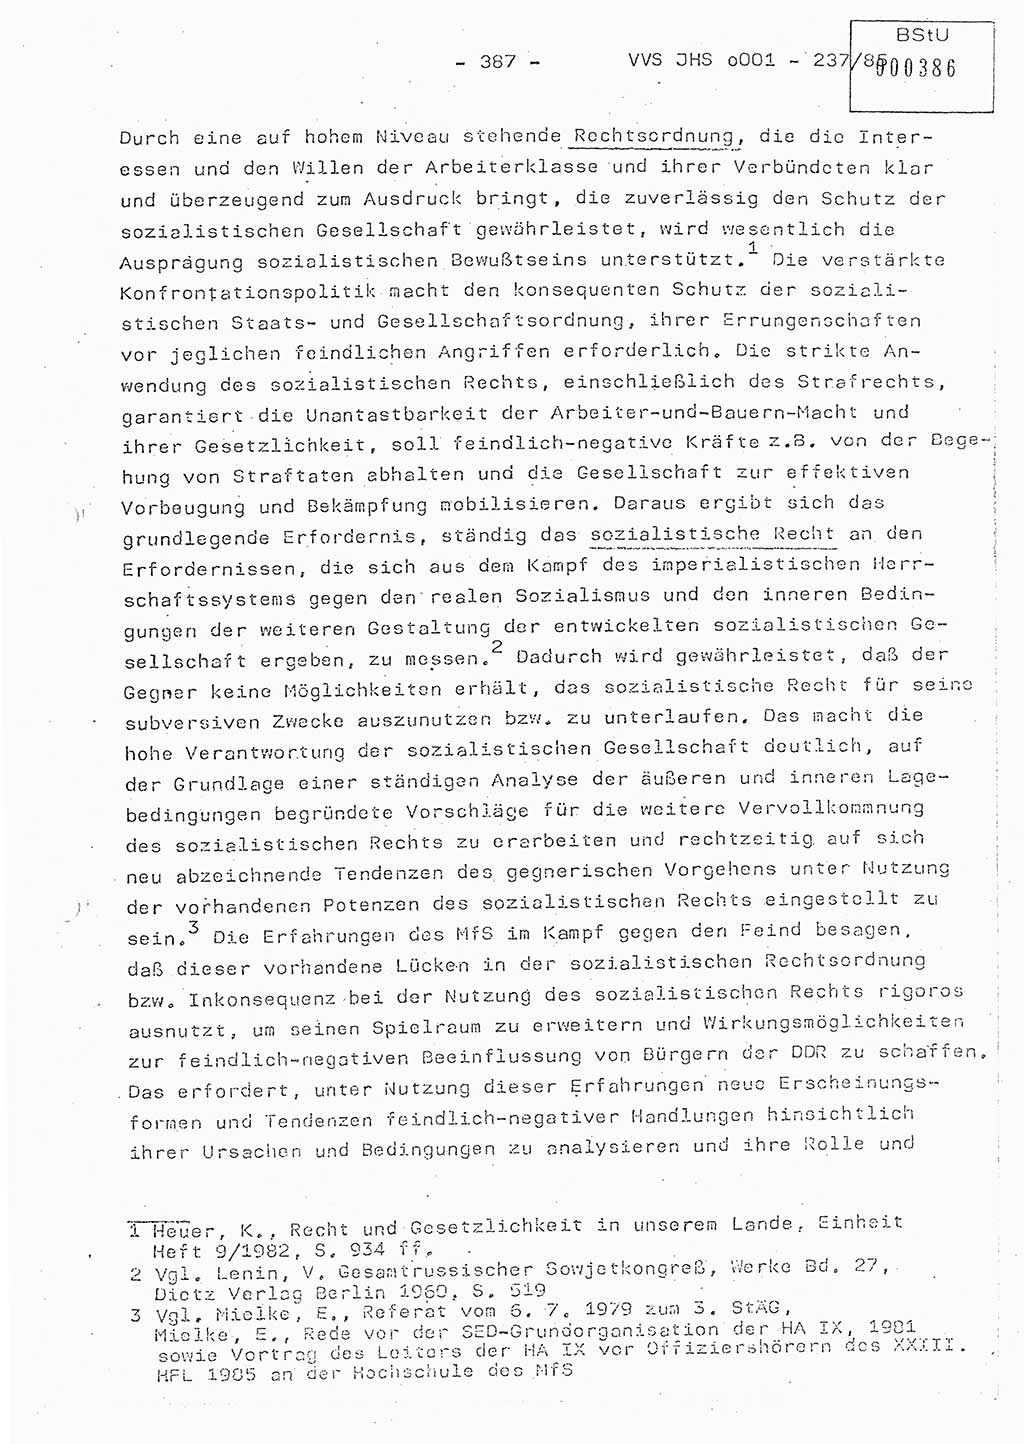 Dissertation Oberstleutnant Peter Jakulski (JHS), Oberstleutnat Christian Rudolph (HA Ⅸ), Major Horst Böttger (ZMD), Major Wolfgang Grüneberg (JHS), Major Albert Meutsch (JHS), Ministerium für Staatssicherheit (MfS) [Deutsche Demokratische Republik (DDR)], Juristische Hochschule (JHS), Vertrauliche Verschlußsache (VVS) o001-237/85, Potsdam 1985, Seite 387 (Diss. MfS DDR JHS VVS o001-237/85 1985, S. 387)